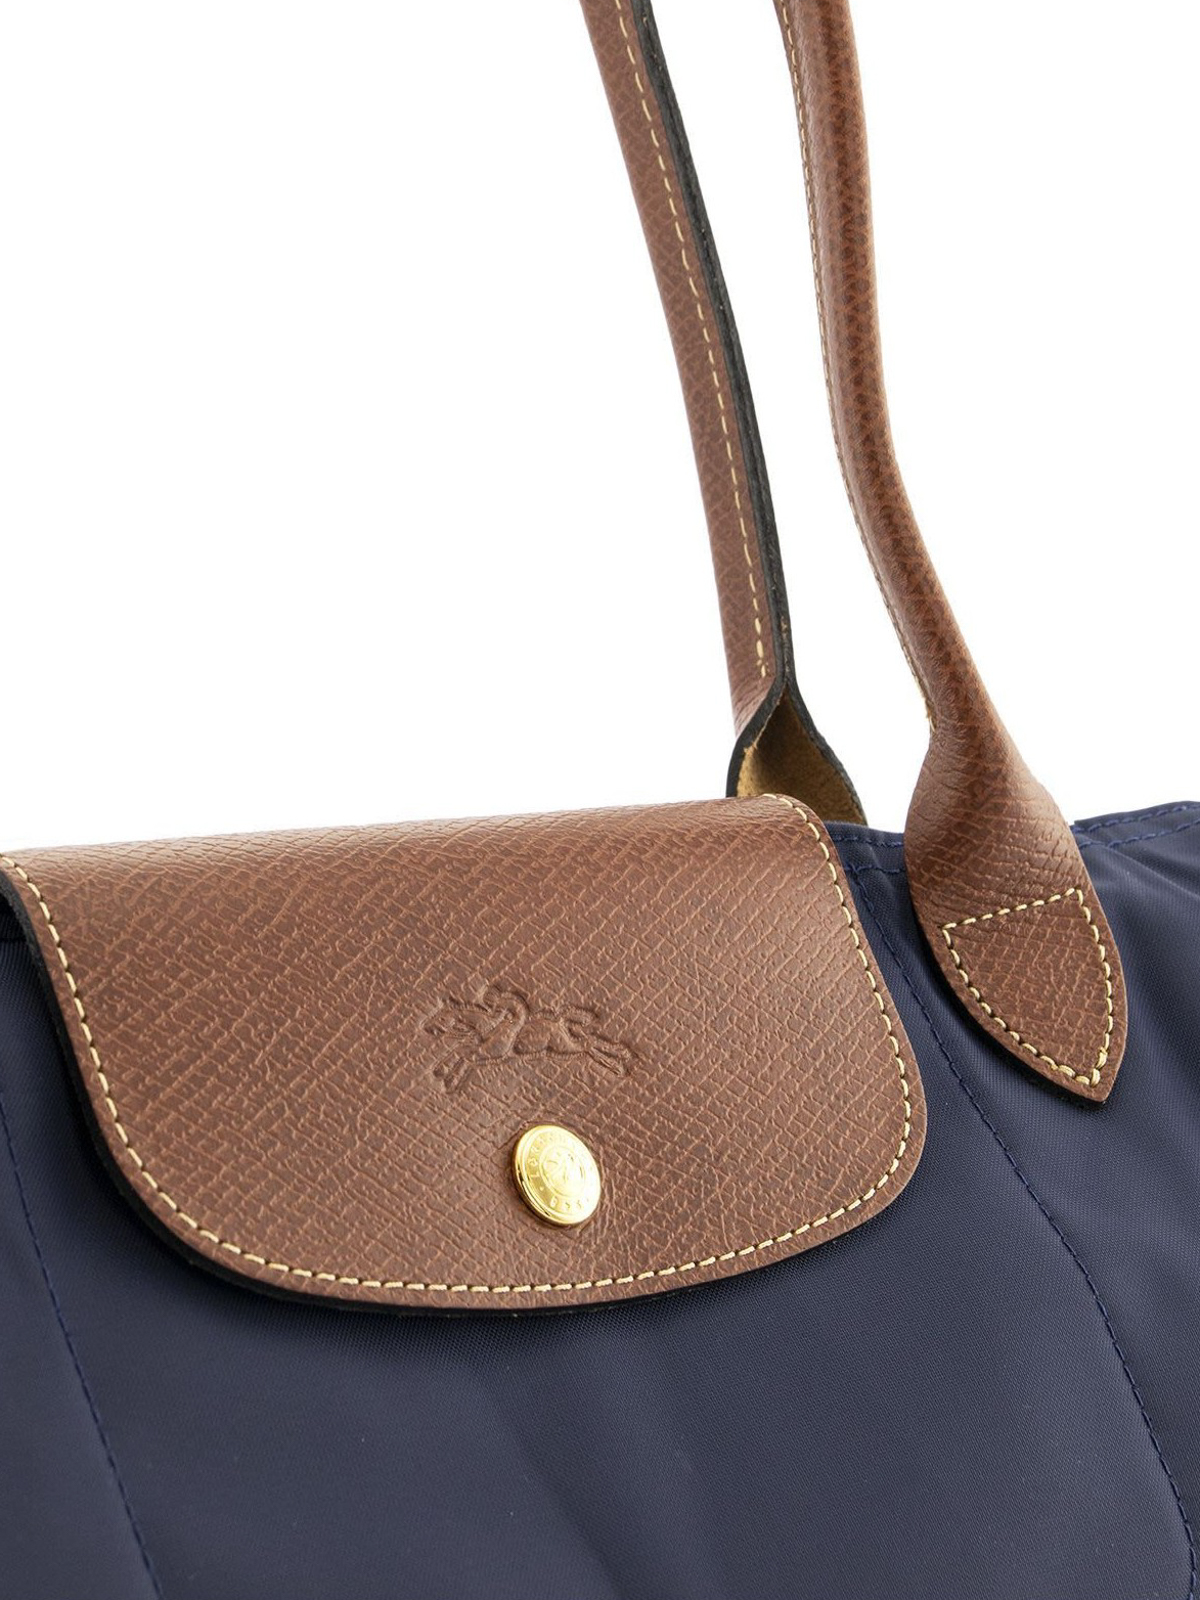 Longchamp, Bags, Longchamp Le Pliage Hobo Bag